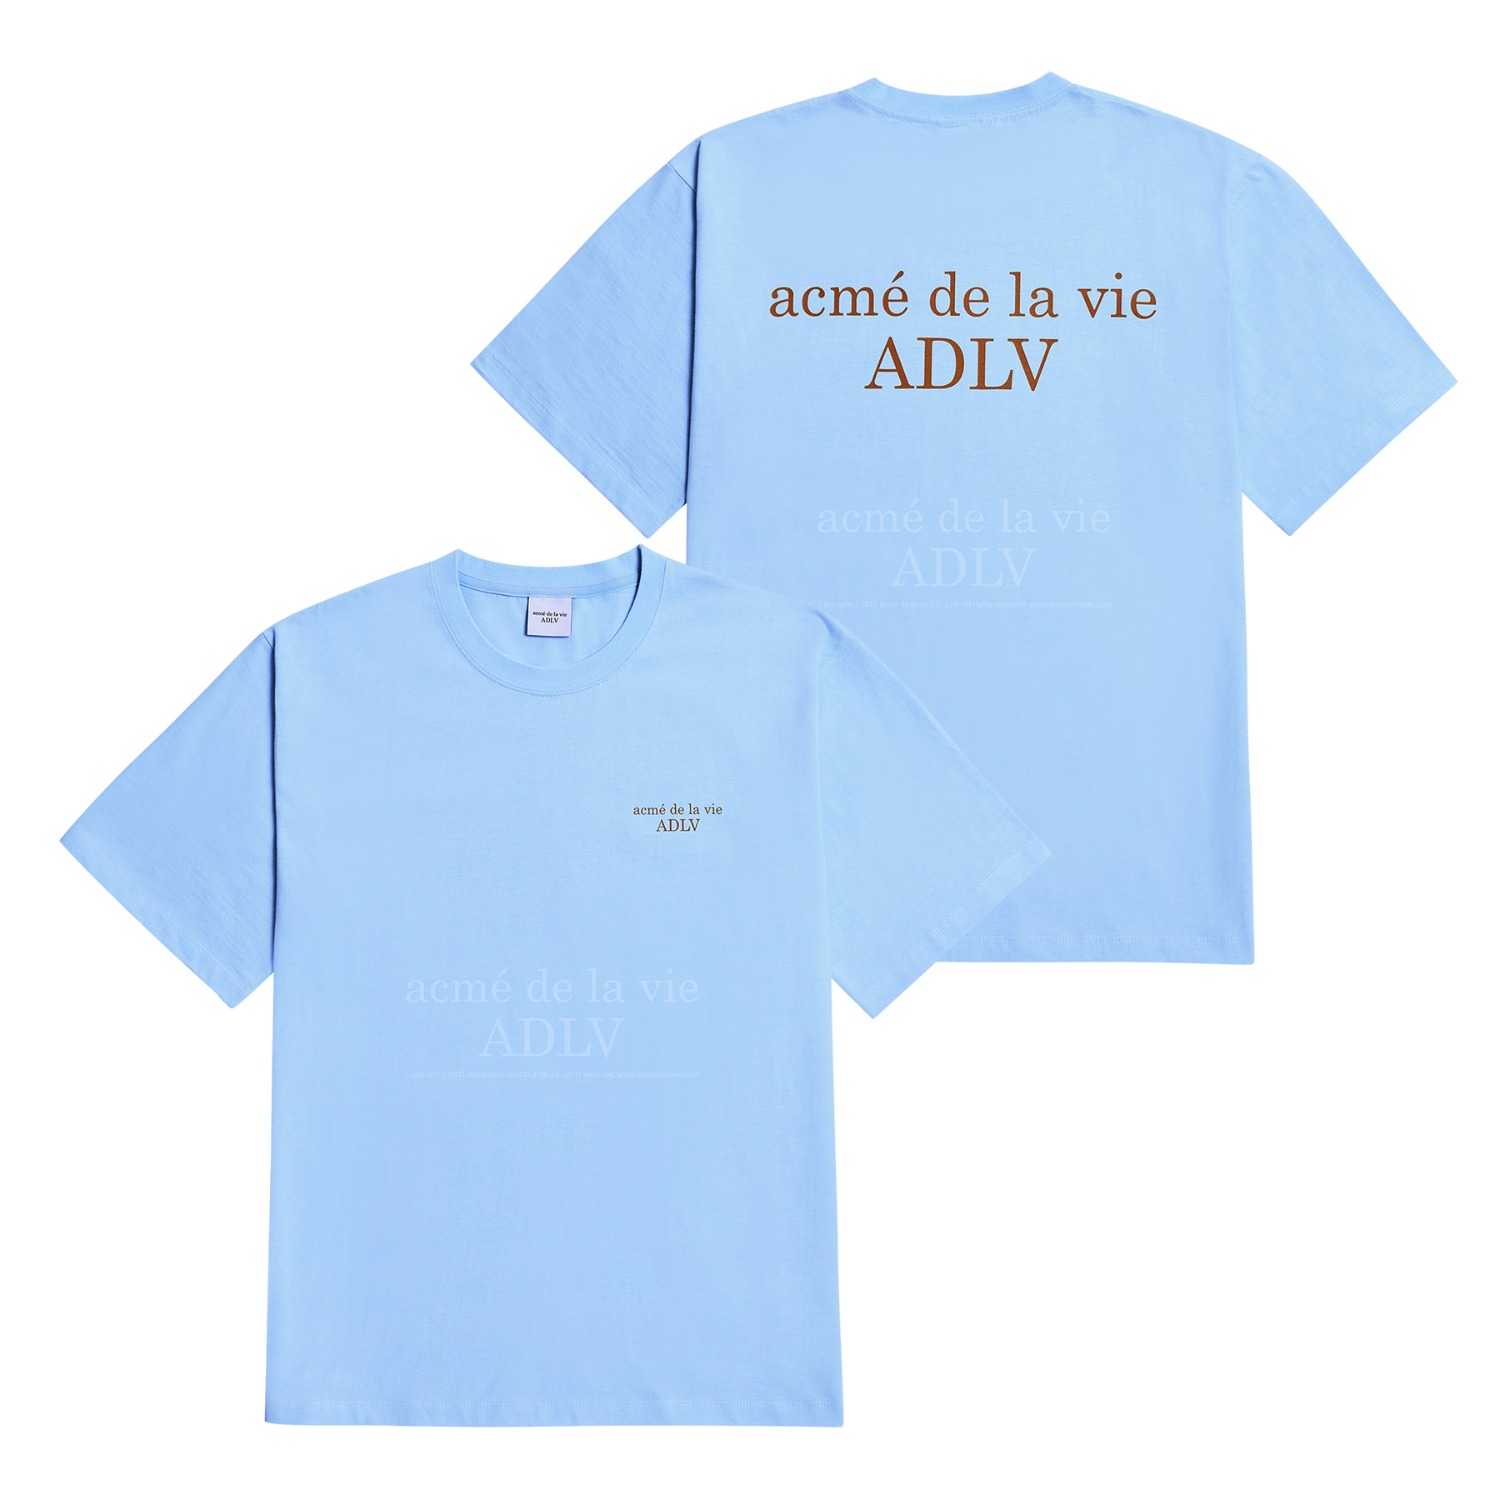 [아크메드라비] ADLV BASIC SHORT SLEEVE T-SHIRT 2 SKY BLUE(1사이즈 ,  5월2일 입고예정)